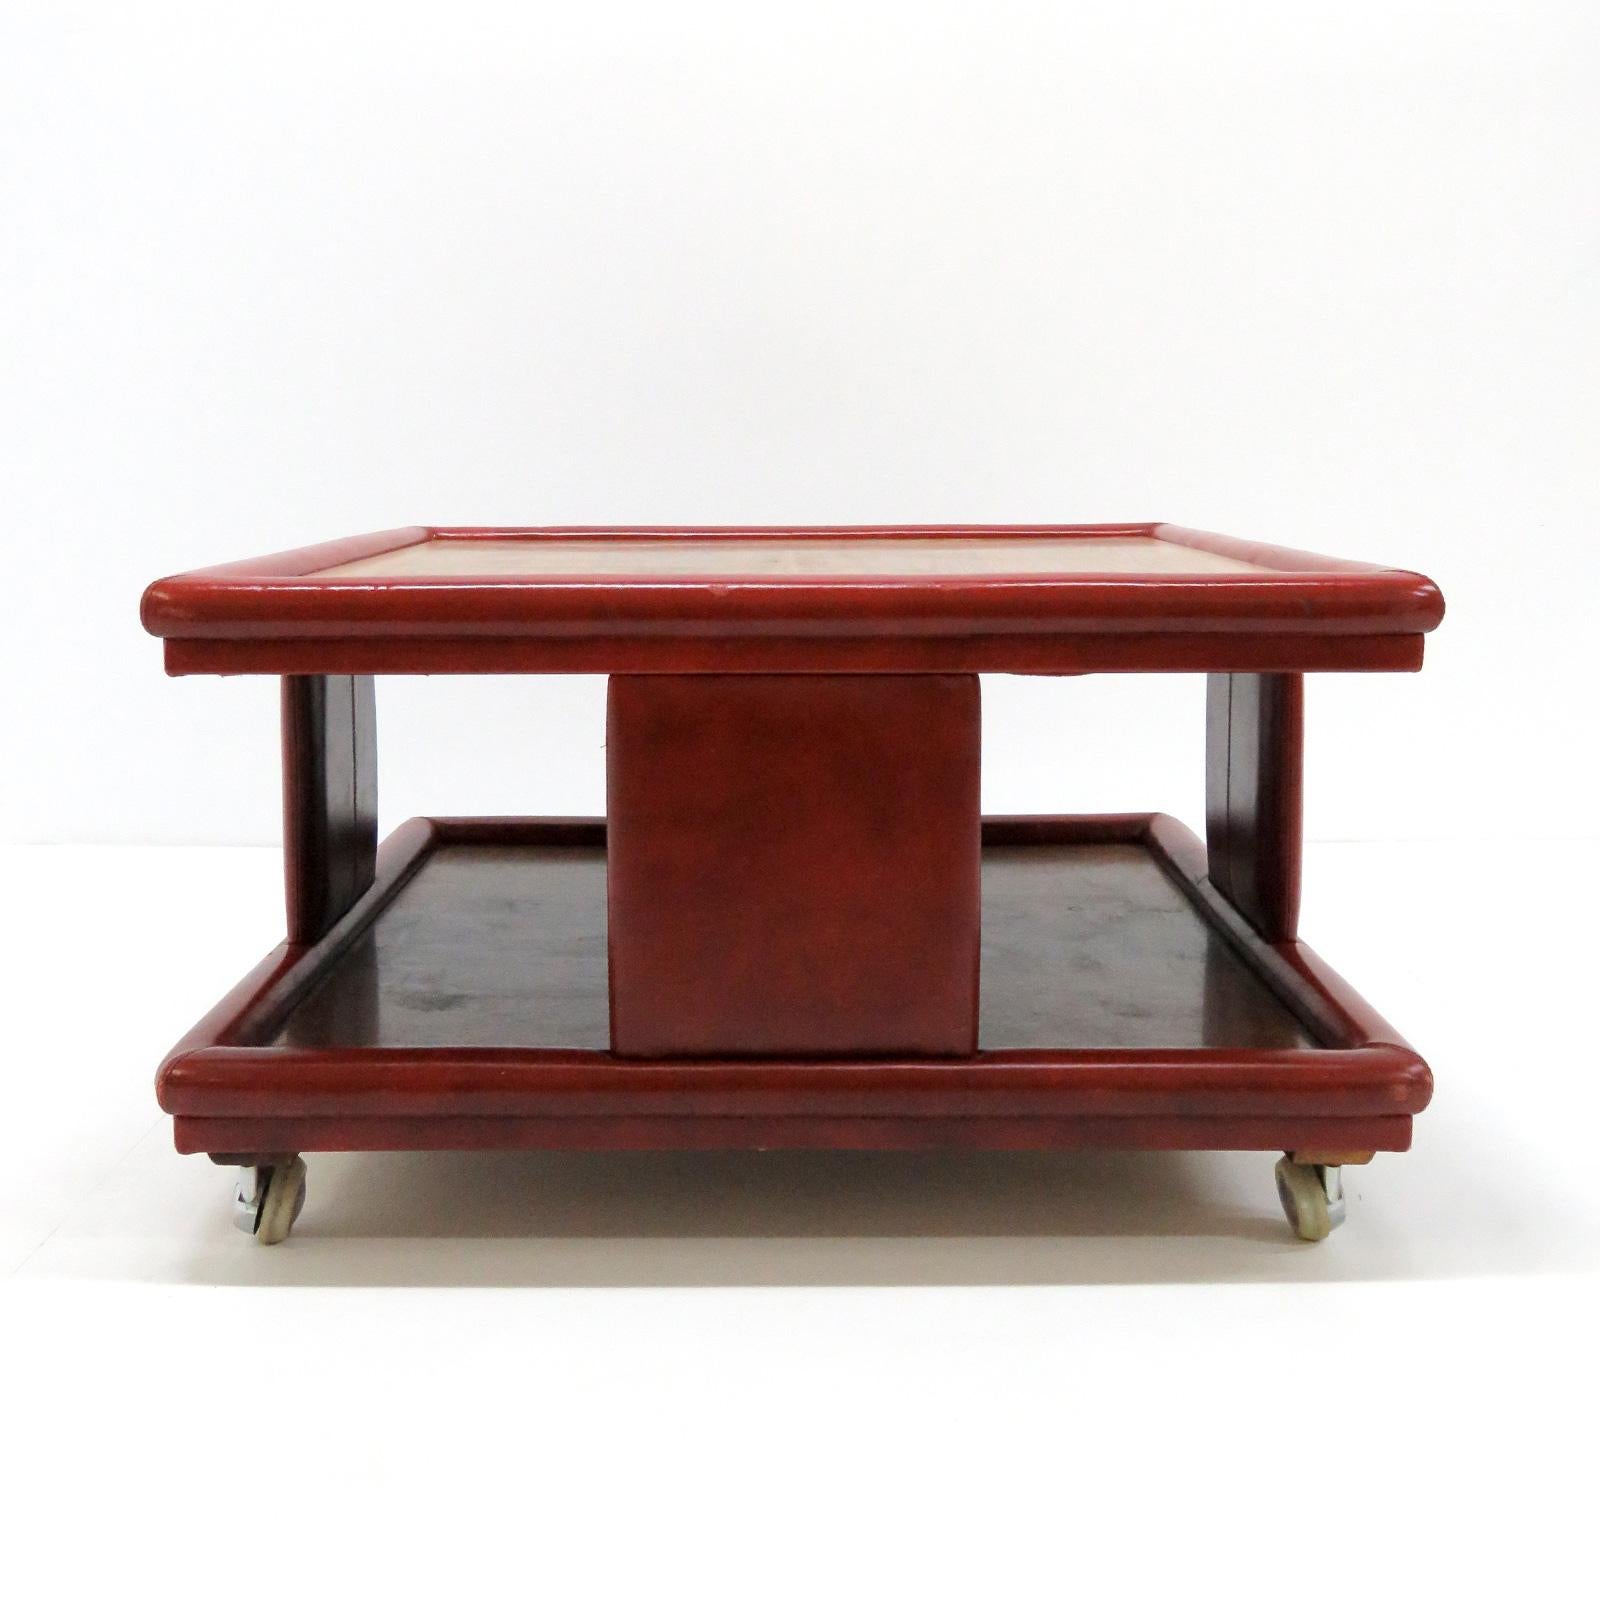 Merveilleuse table basse à deux niveaux en cuir rouge et bois d'Italie, 1970, attribuée à Poltrona Frau. Un plateau en bois foncé et un autre en bois clair, superbe habillage en cuir patiné sur roulettes amovibles.
  